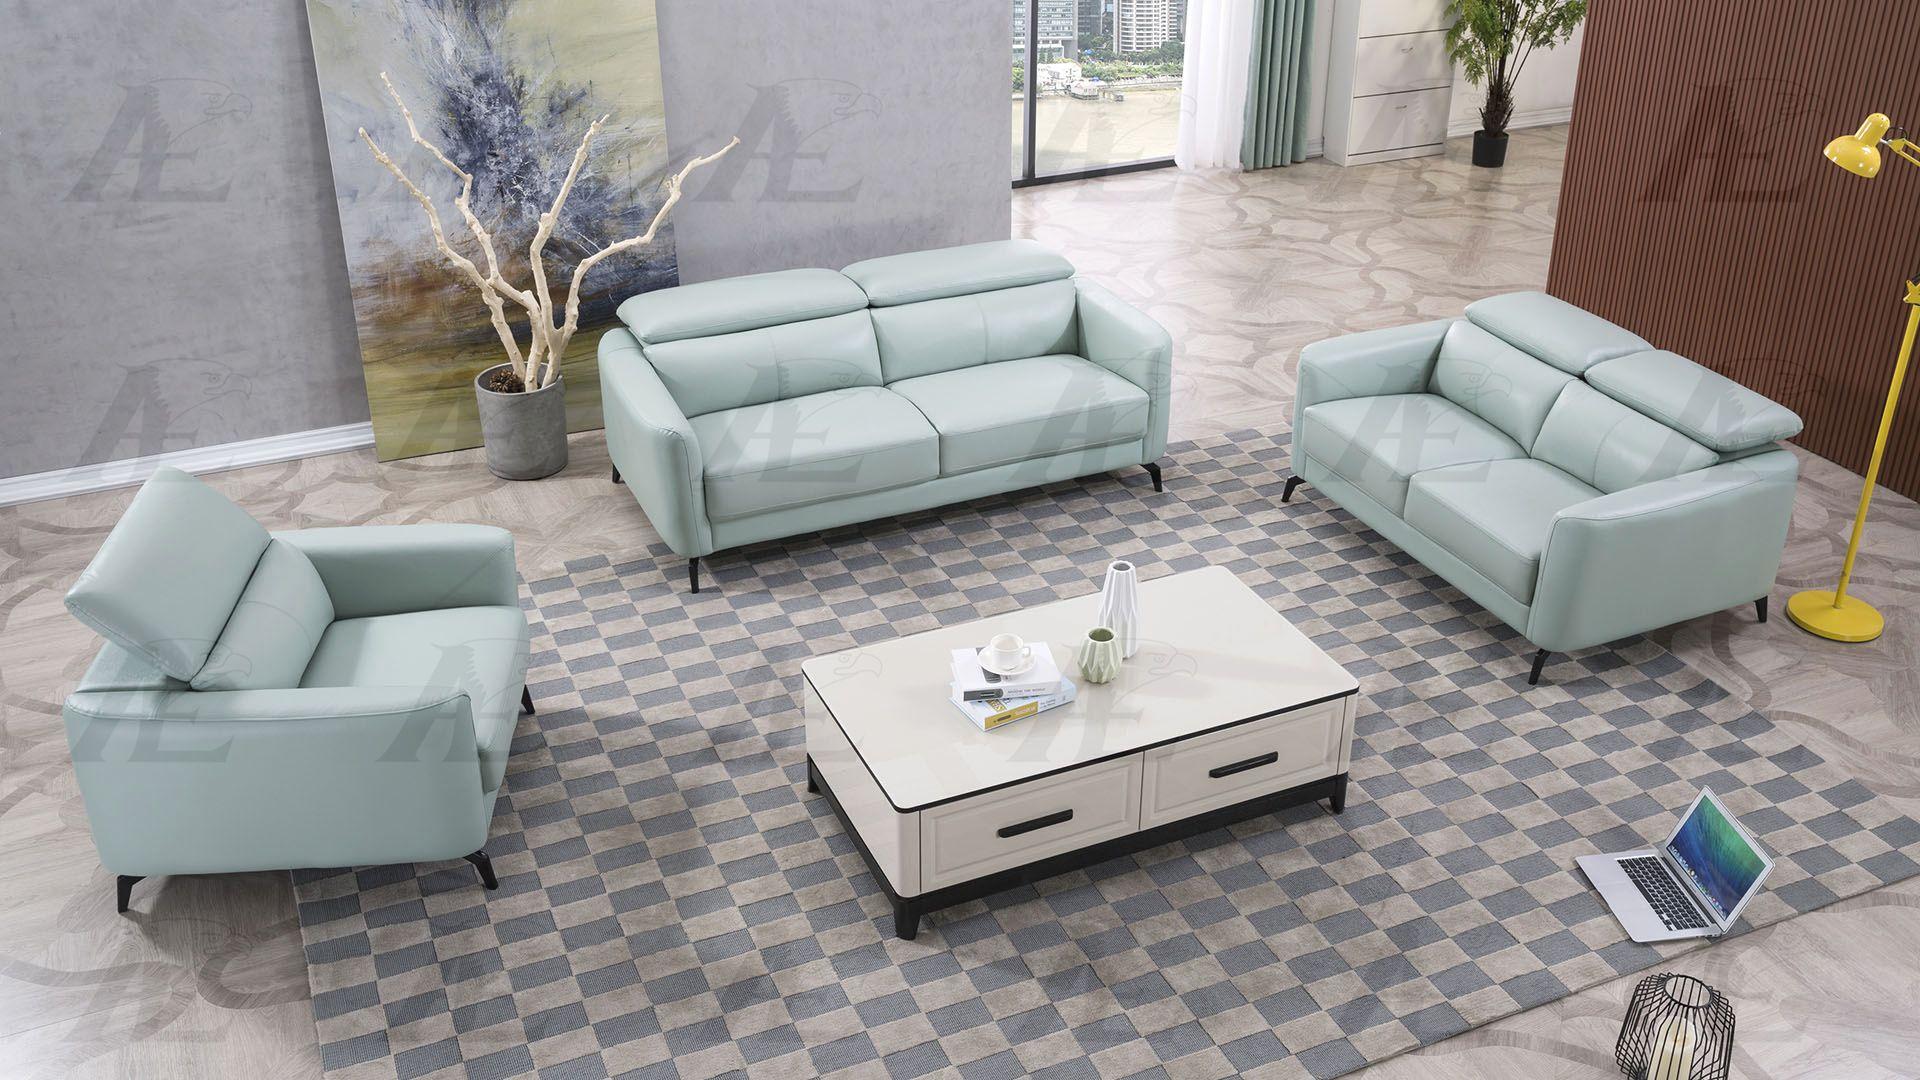 

    
American Eagle Furniture EK155-LGN-SF Sofa Teal EK155-LGN-SF
